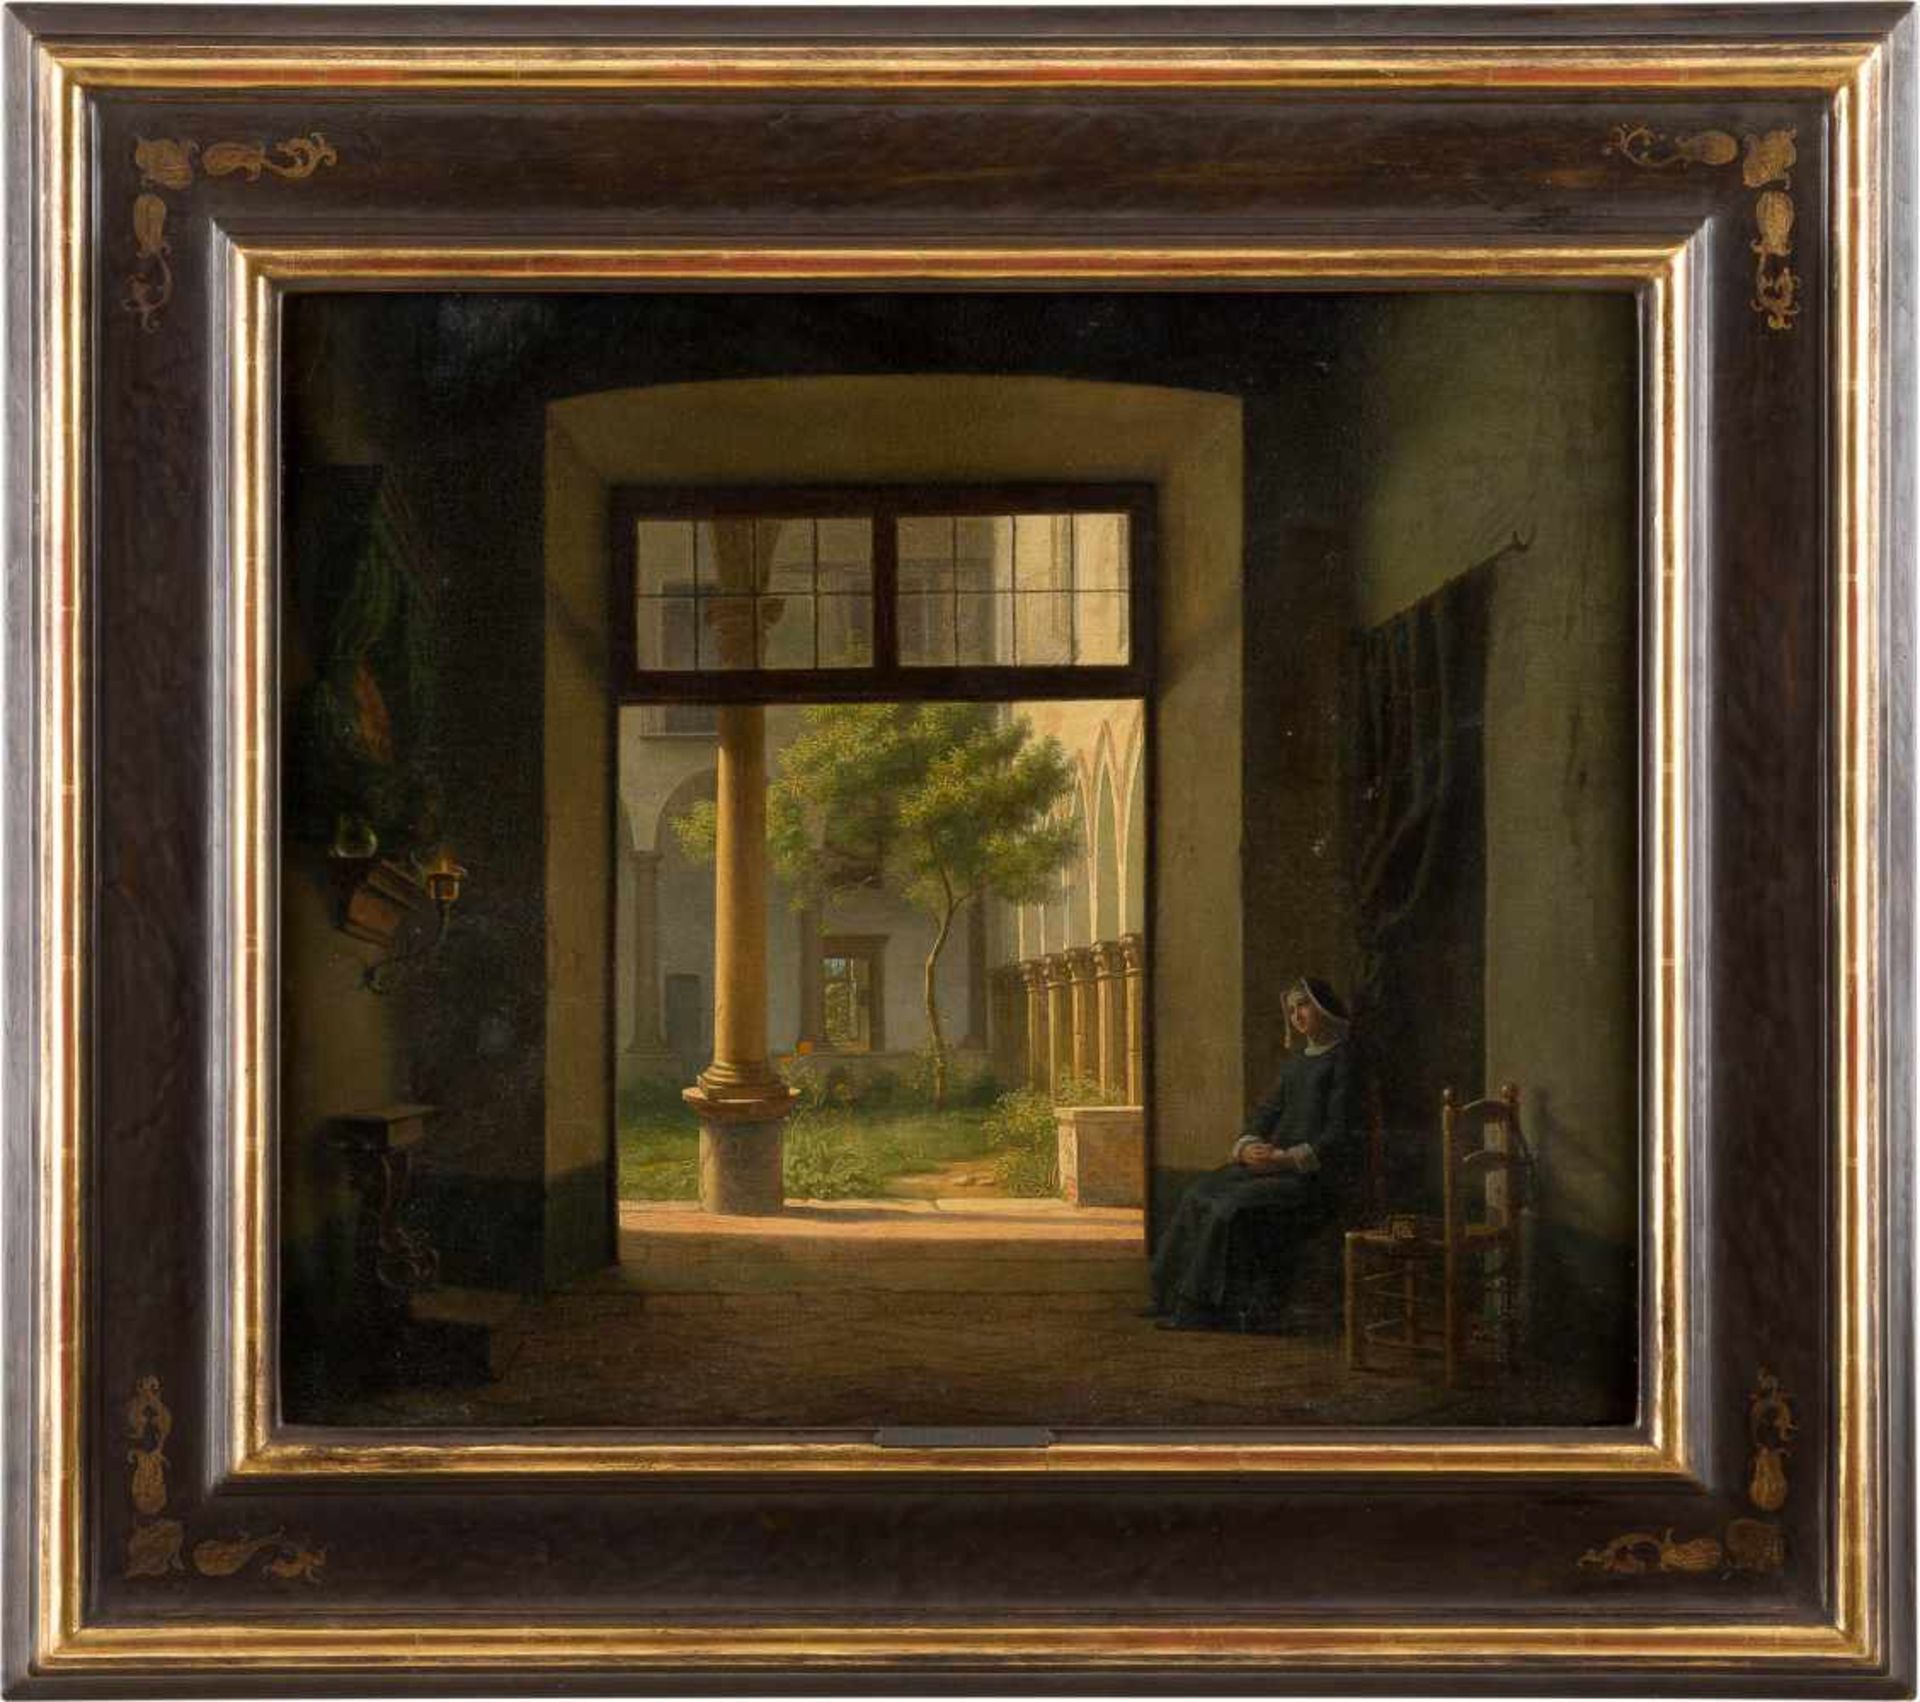 HENRY JOSEPH FRADELLE1778 Lille - 1865 LondonKlosterfrieden Öl auf Leinwand (doubl.). 45,5 x 55,5 cm - Bild 2 aus 2